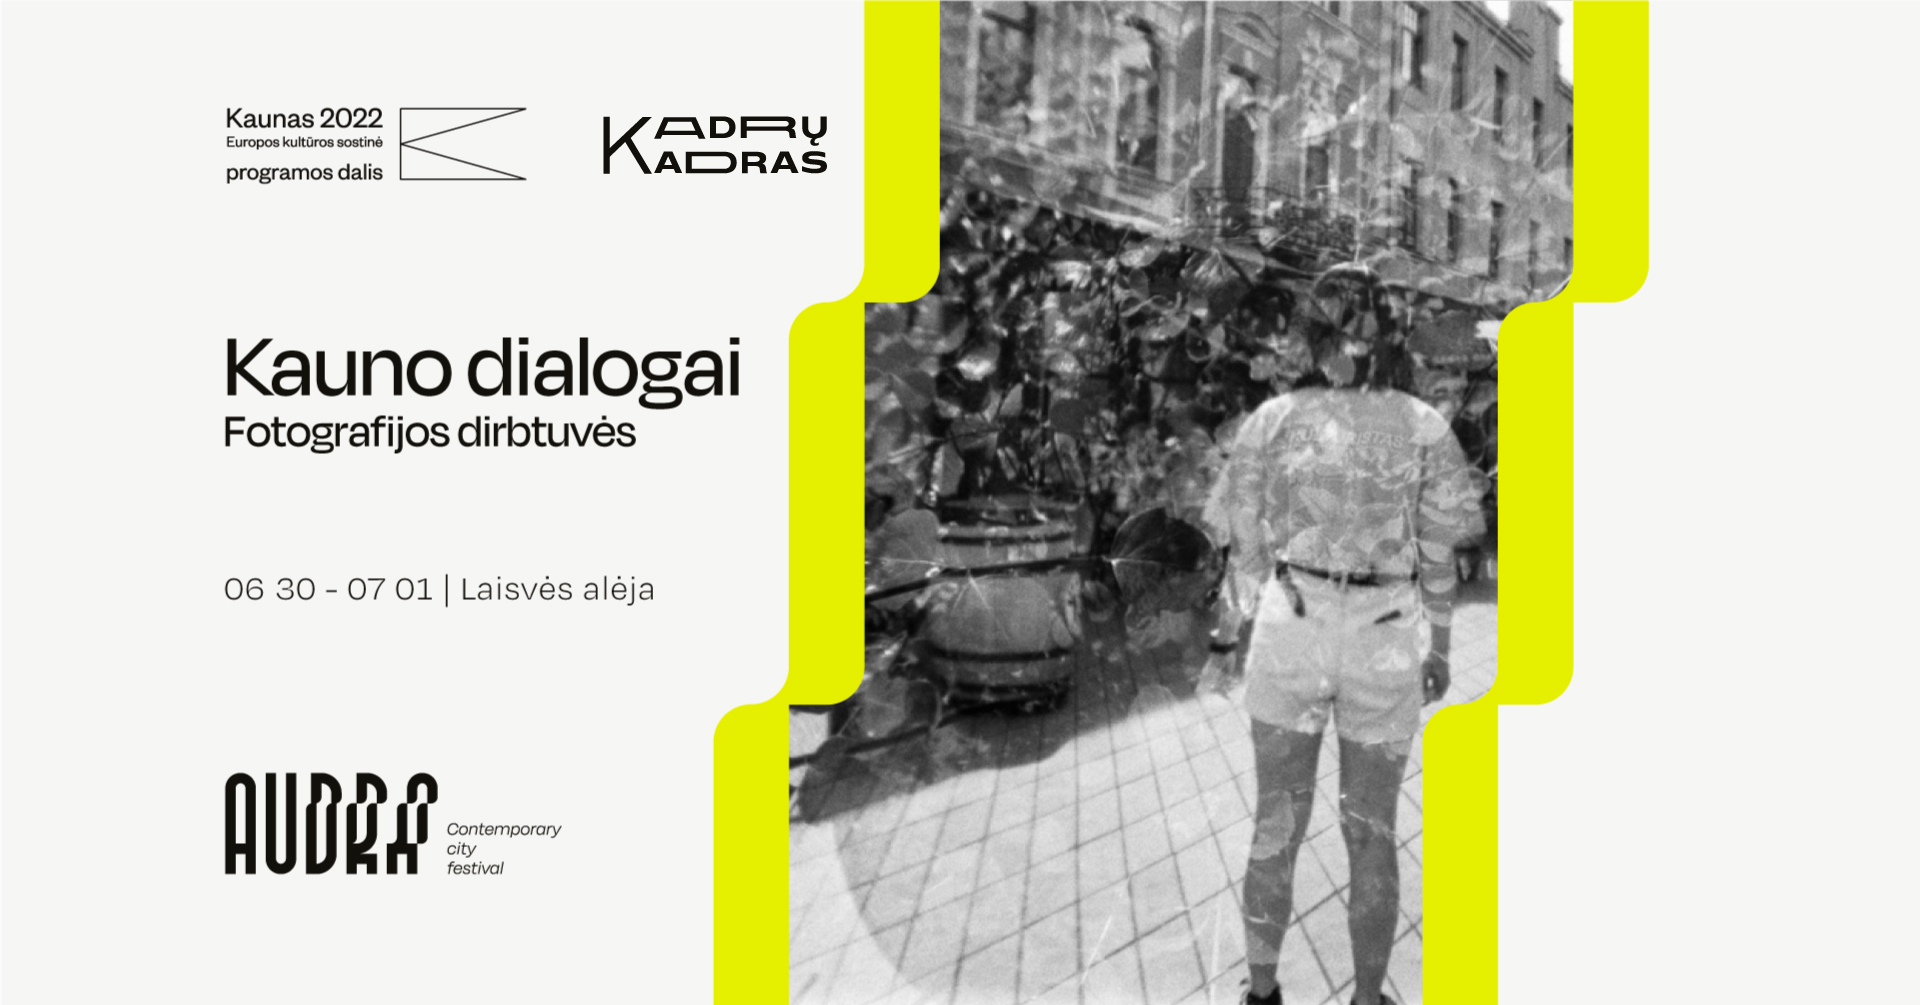 Kauno Dialogai - Fotografijos dirbtuvės